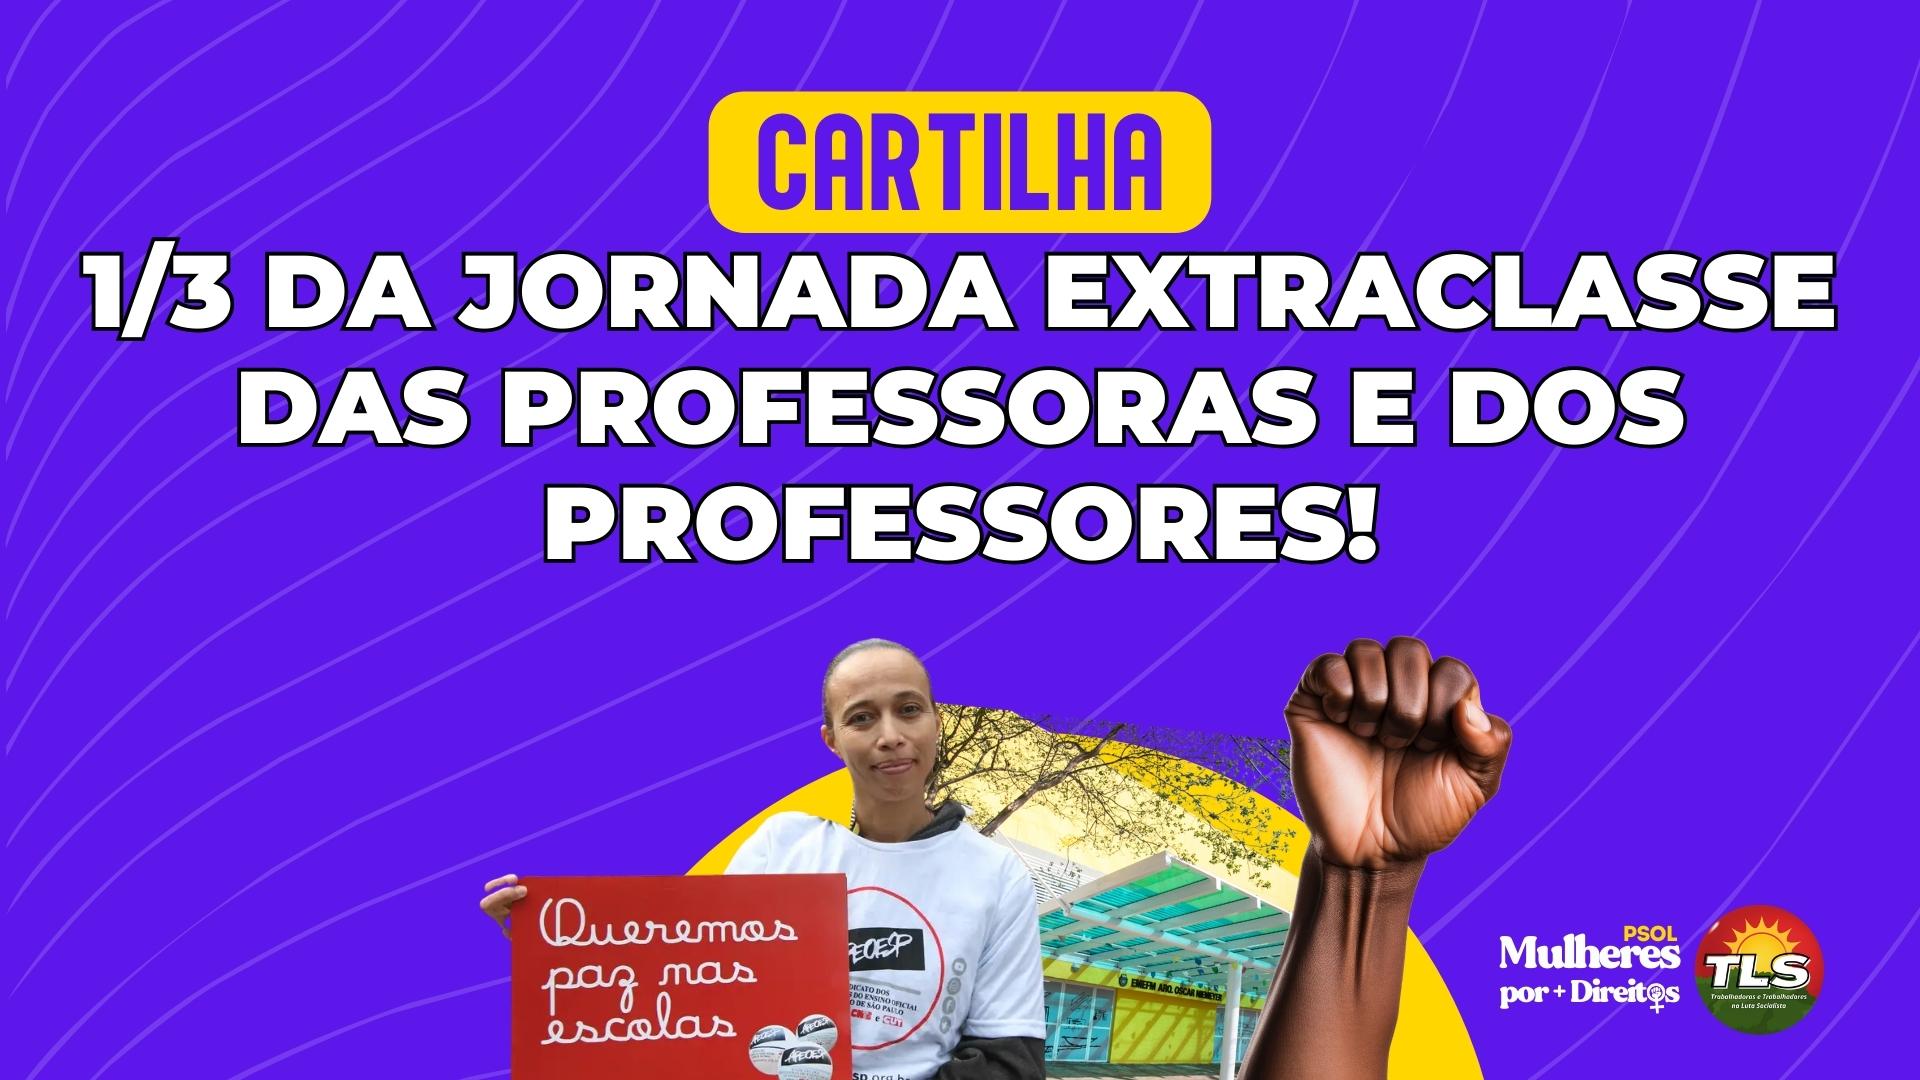 CARTILHA: 1/3 DA JORNADA EXTRACLASSE DAS PROFESSORAS E DOS PROFESSORES!